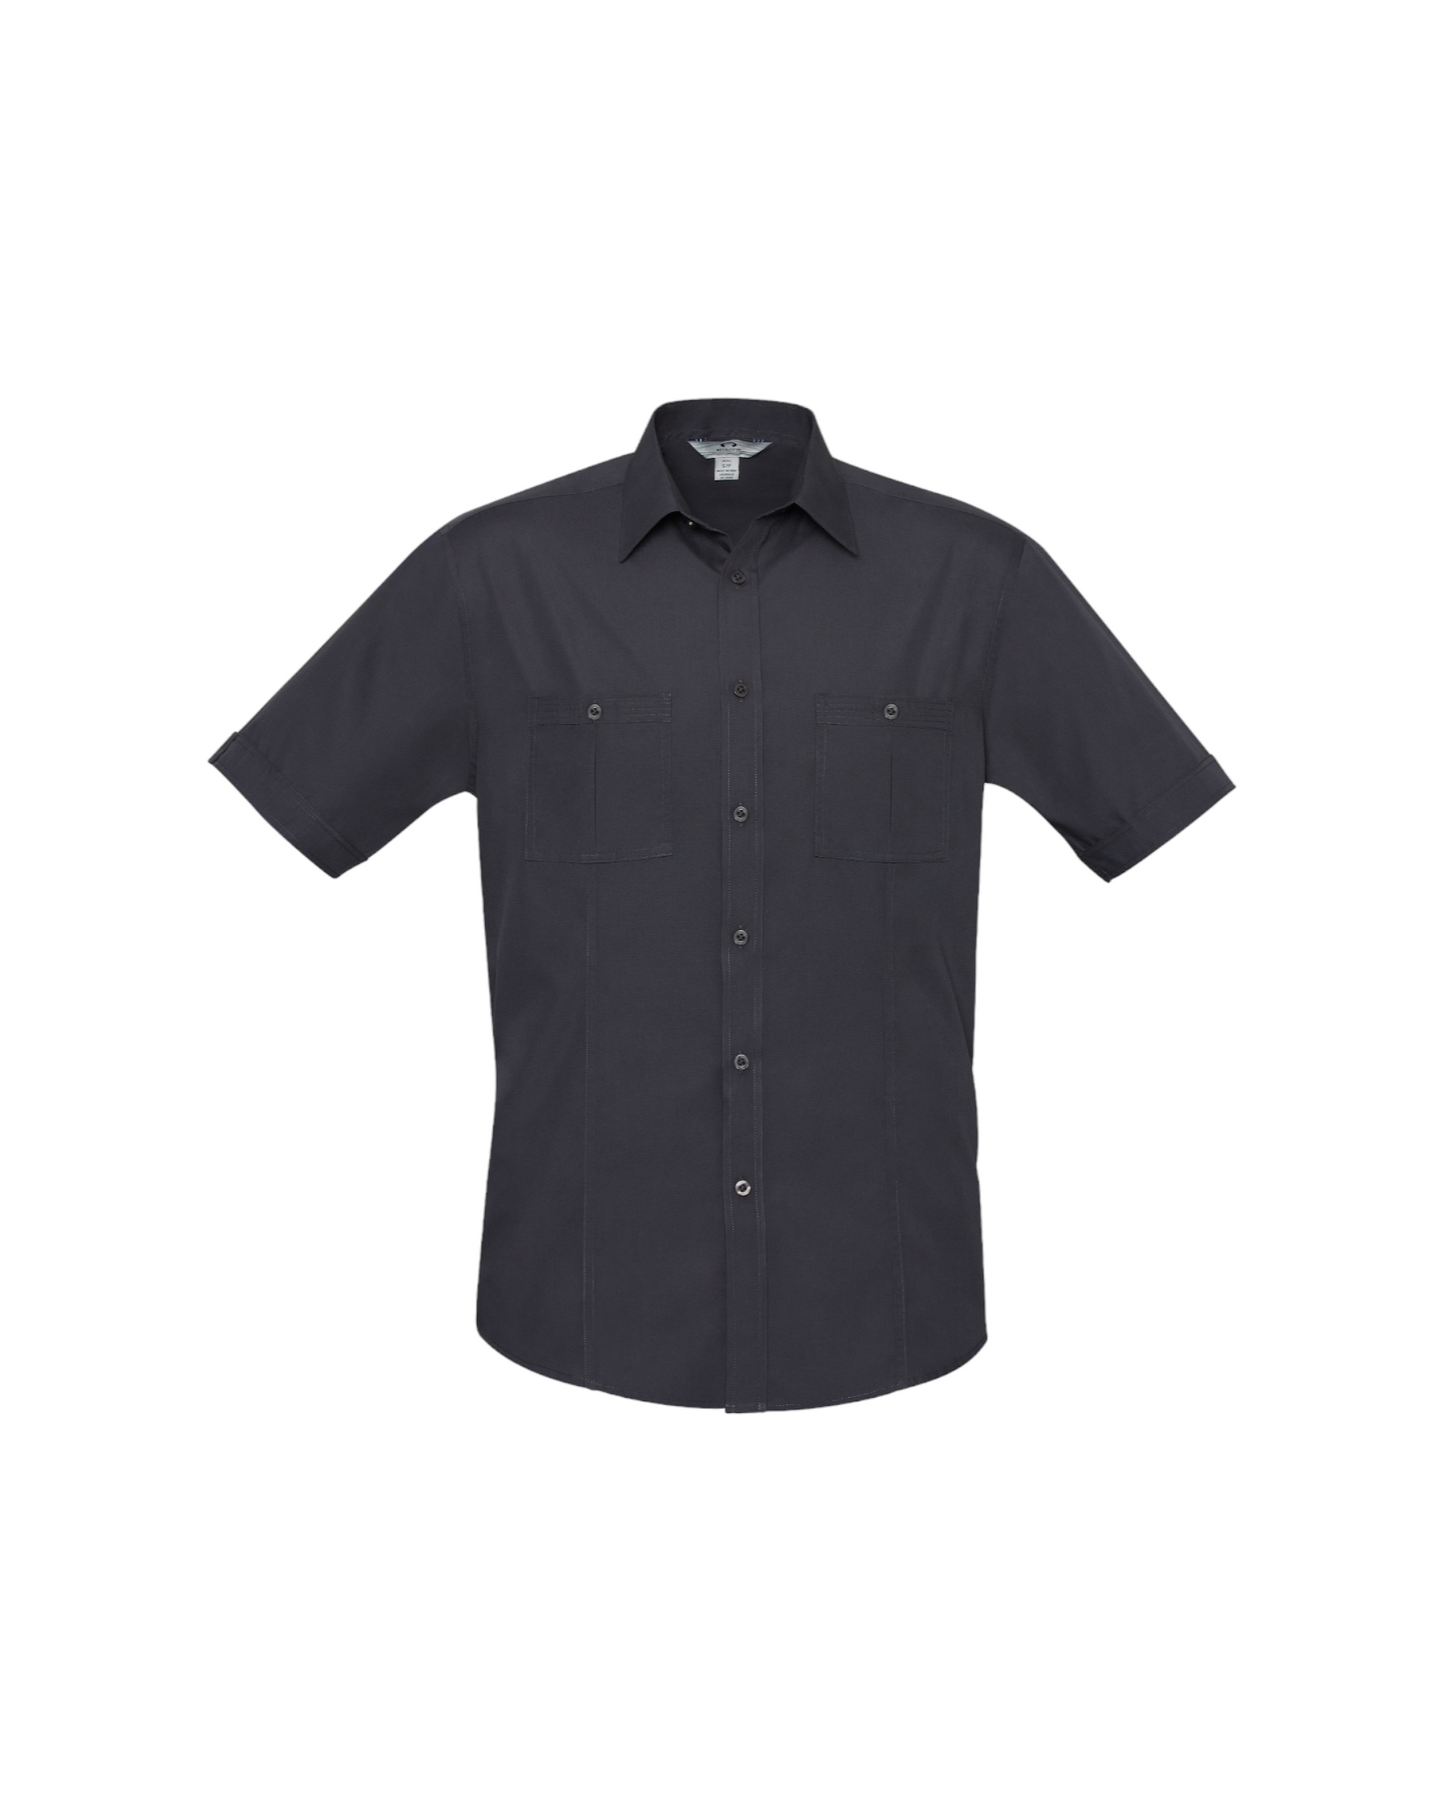 Chemise à manches courtes Bondi pour hommes Fashion Biz #S306MS